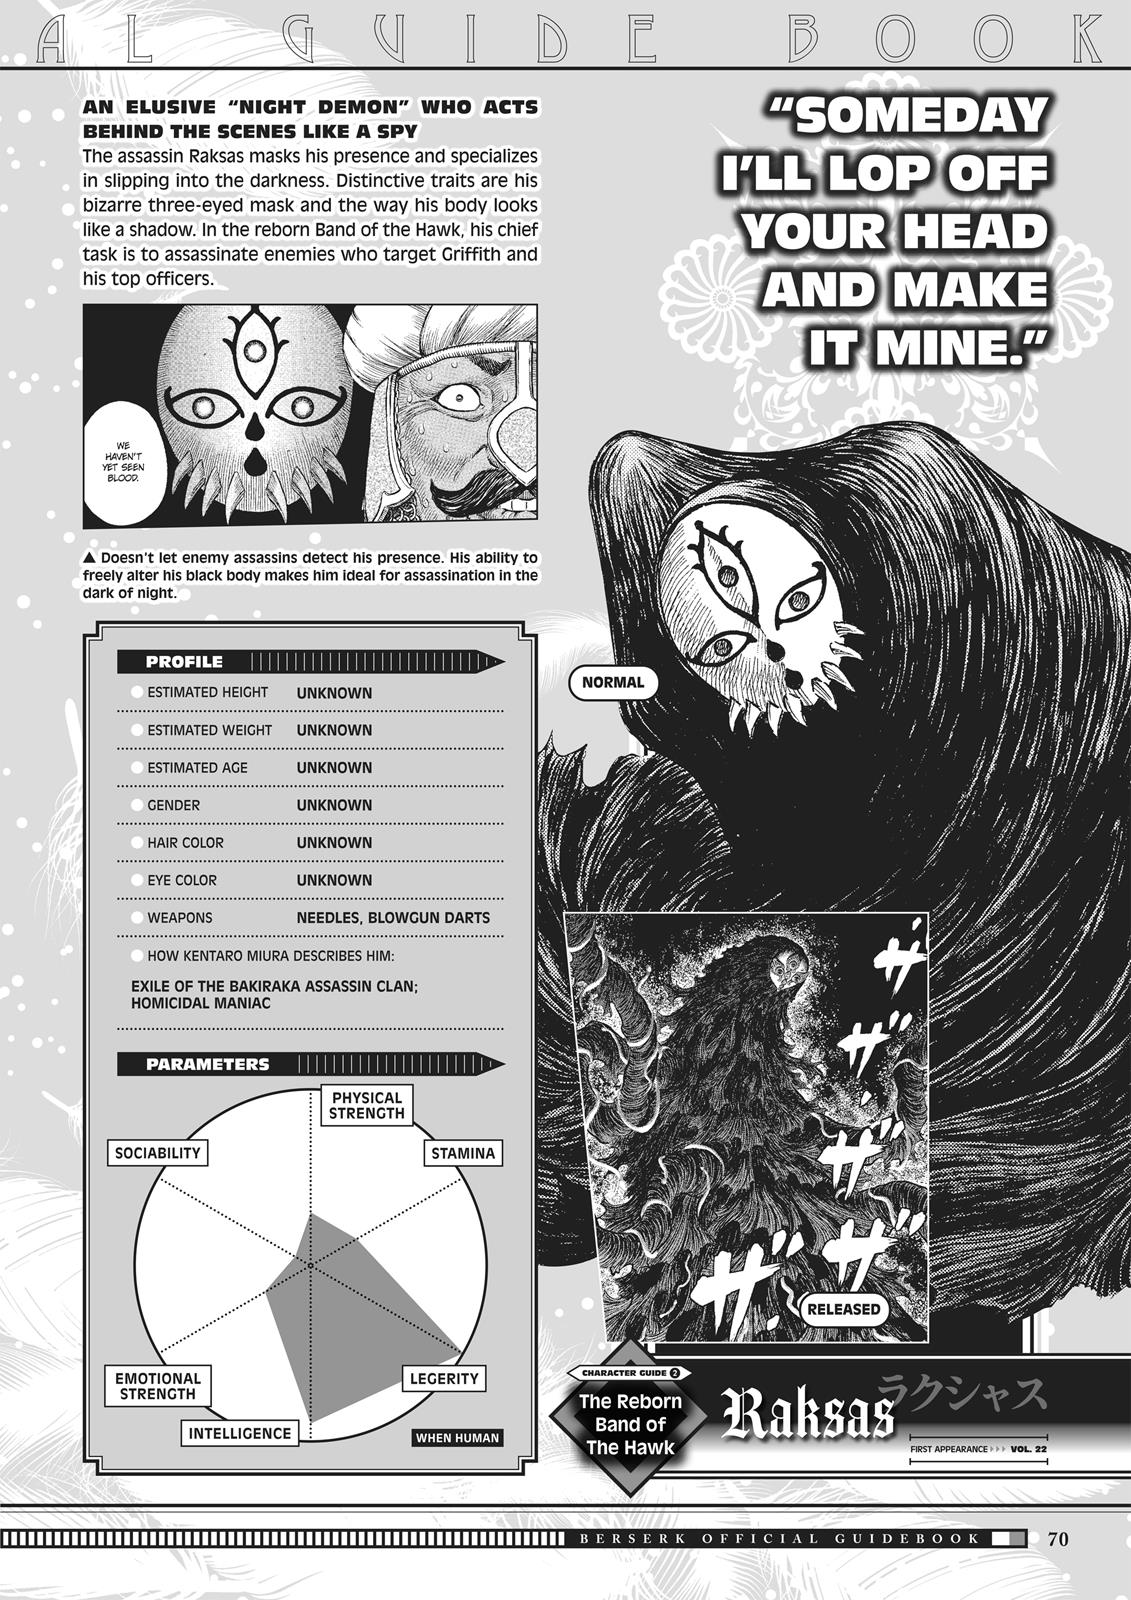 Berserk Manga Chapter 350.5 image 068